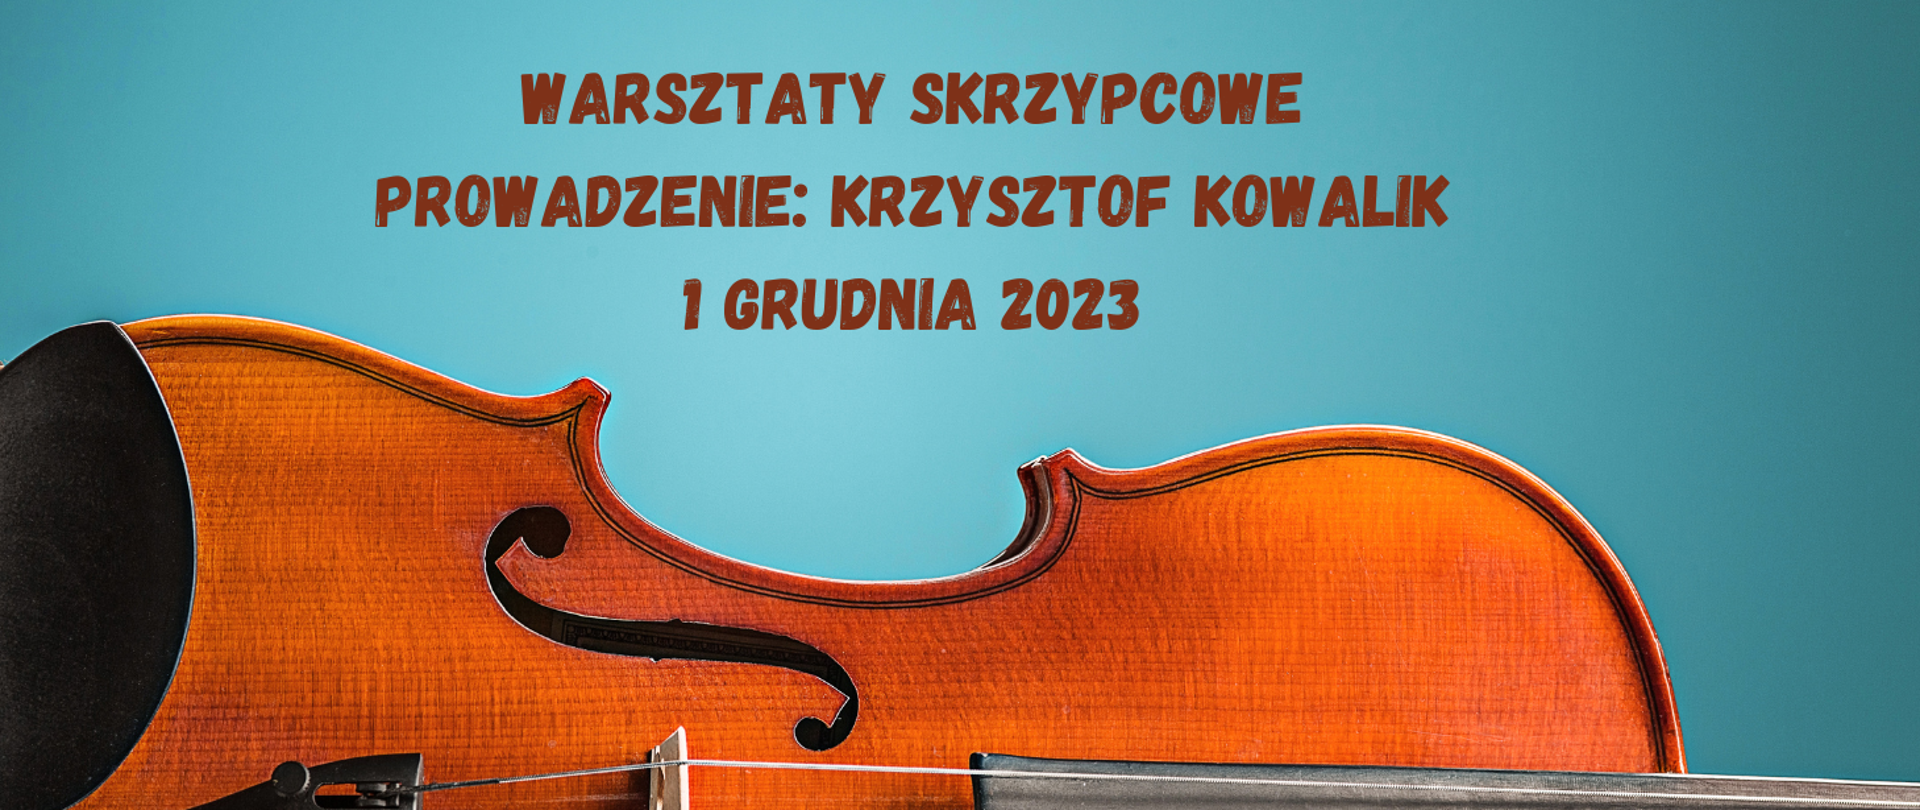 Na niebieskim tle na dole leżące skrzypce, nad skrzypcami test w kolorze brązowym "Warsztaty skrzypcowe prowadzenie: Krzysztof Kowalik 1 grudnia 2023"